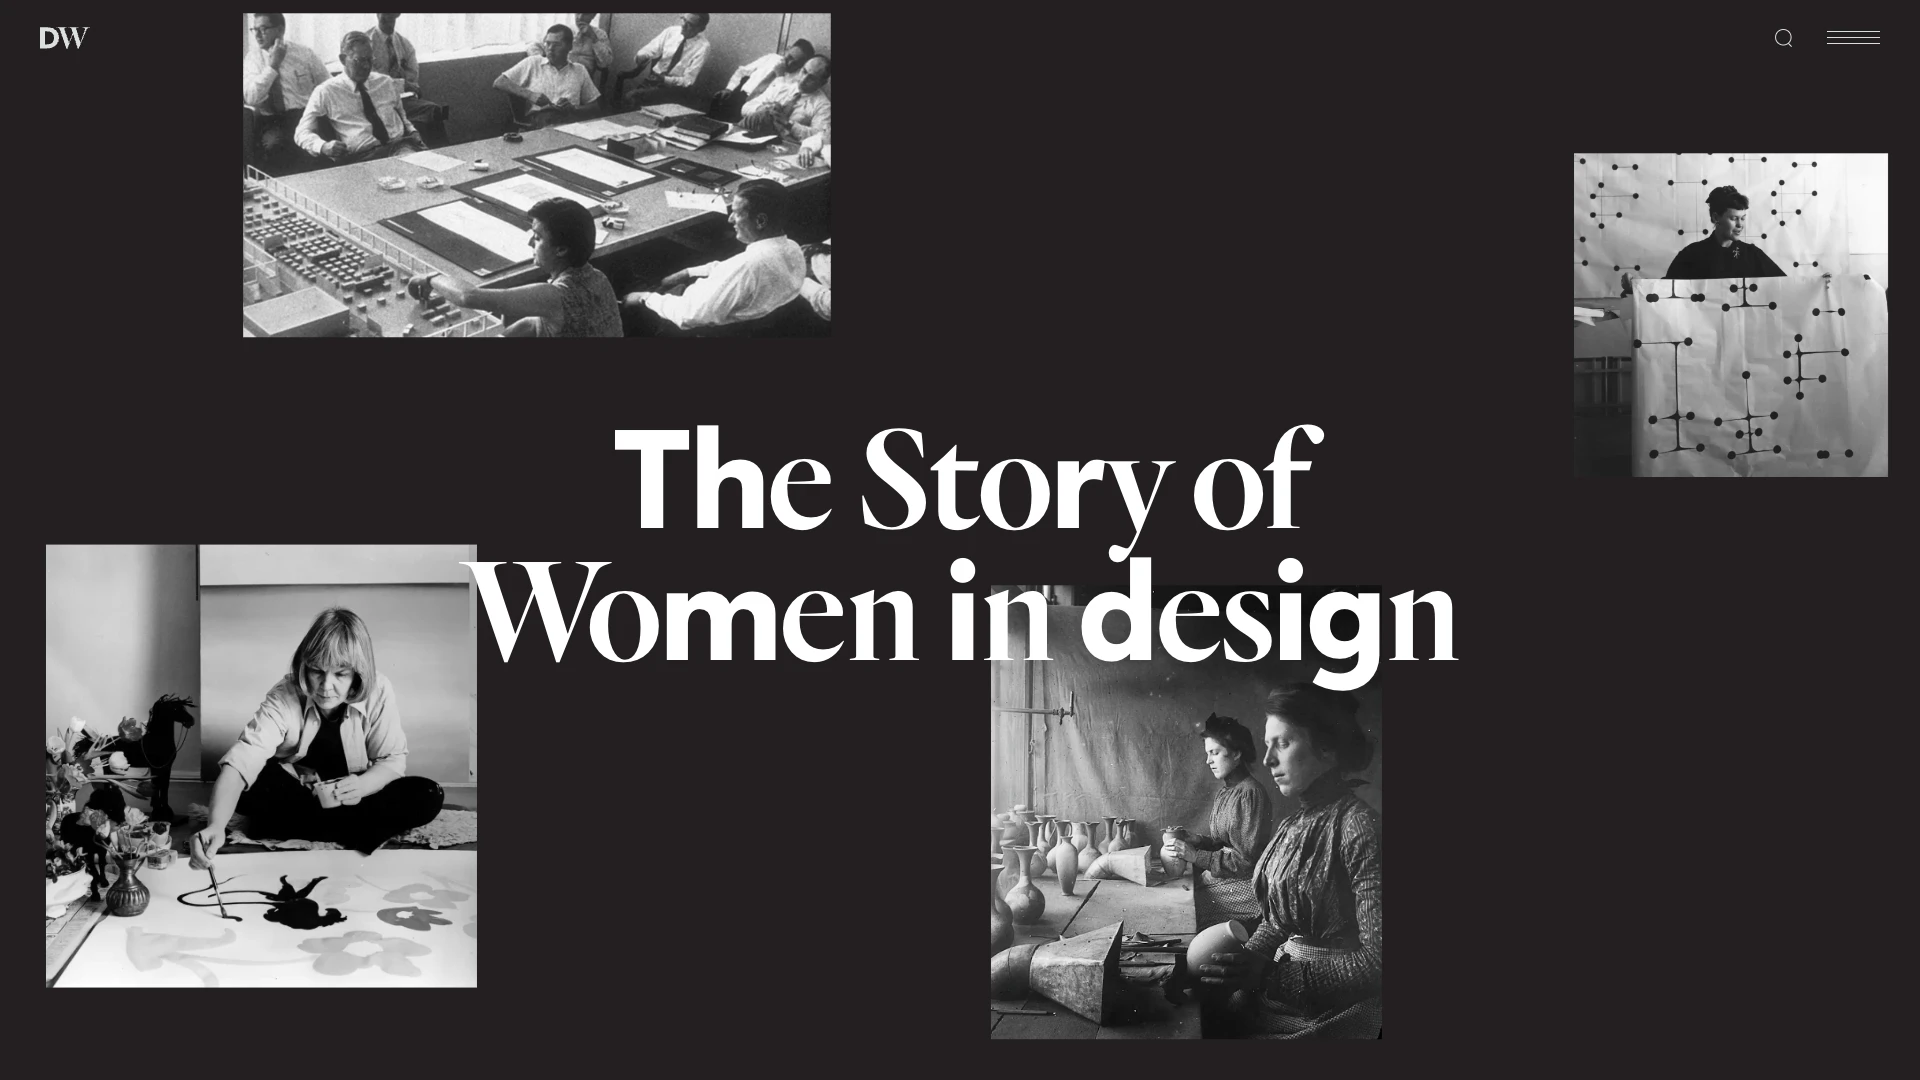 Designed by Women